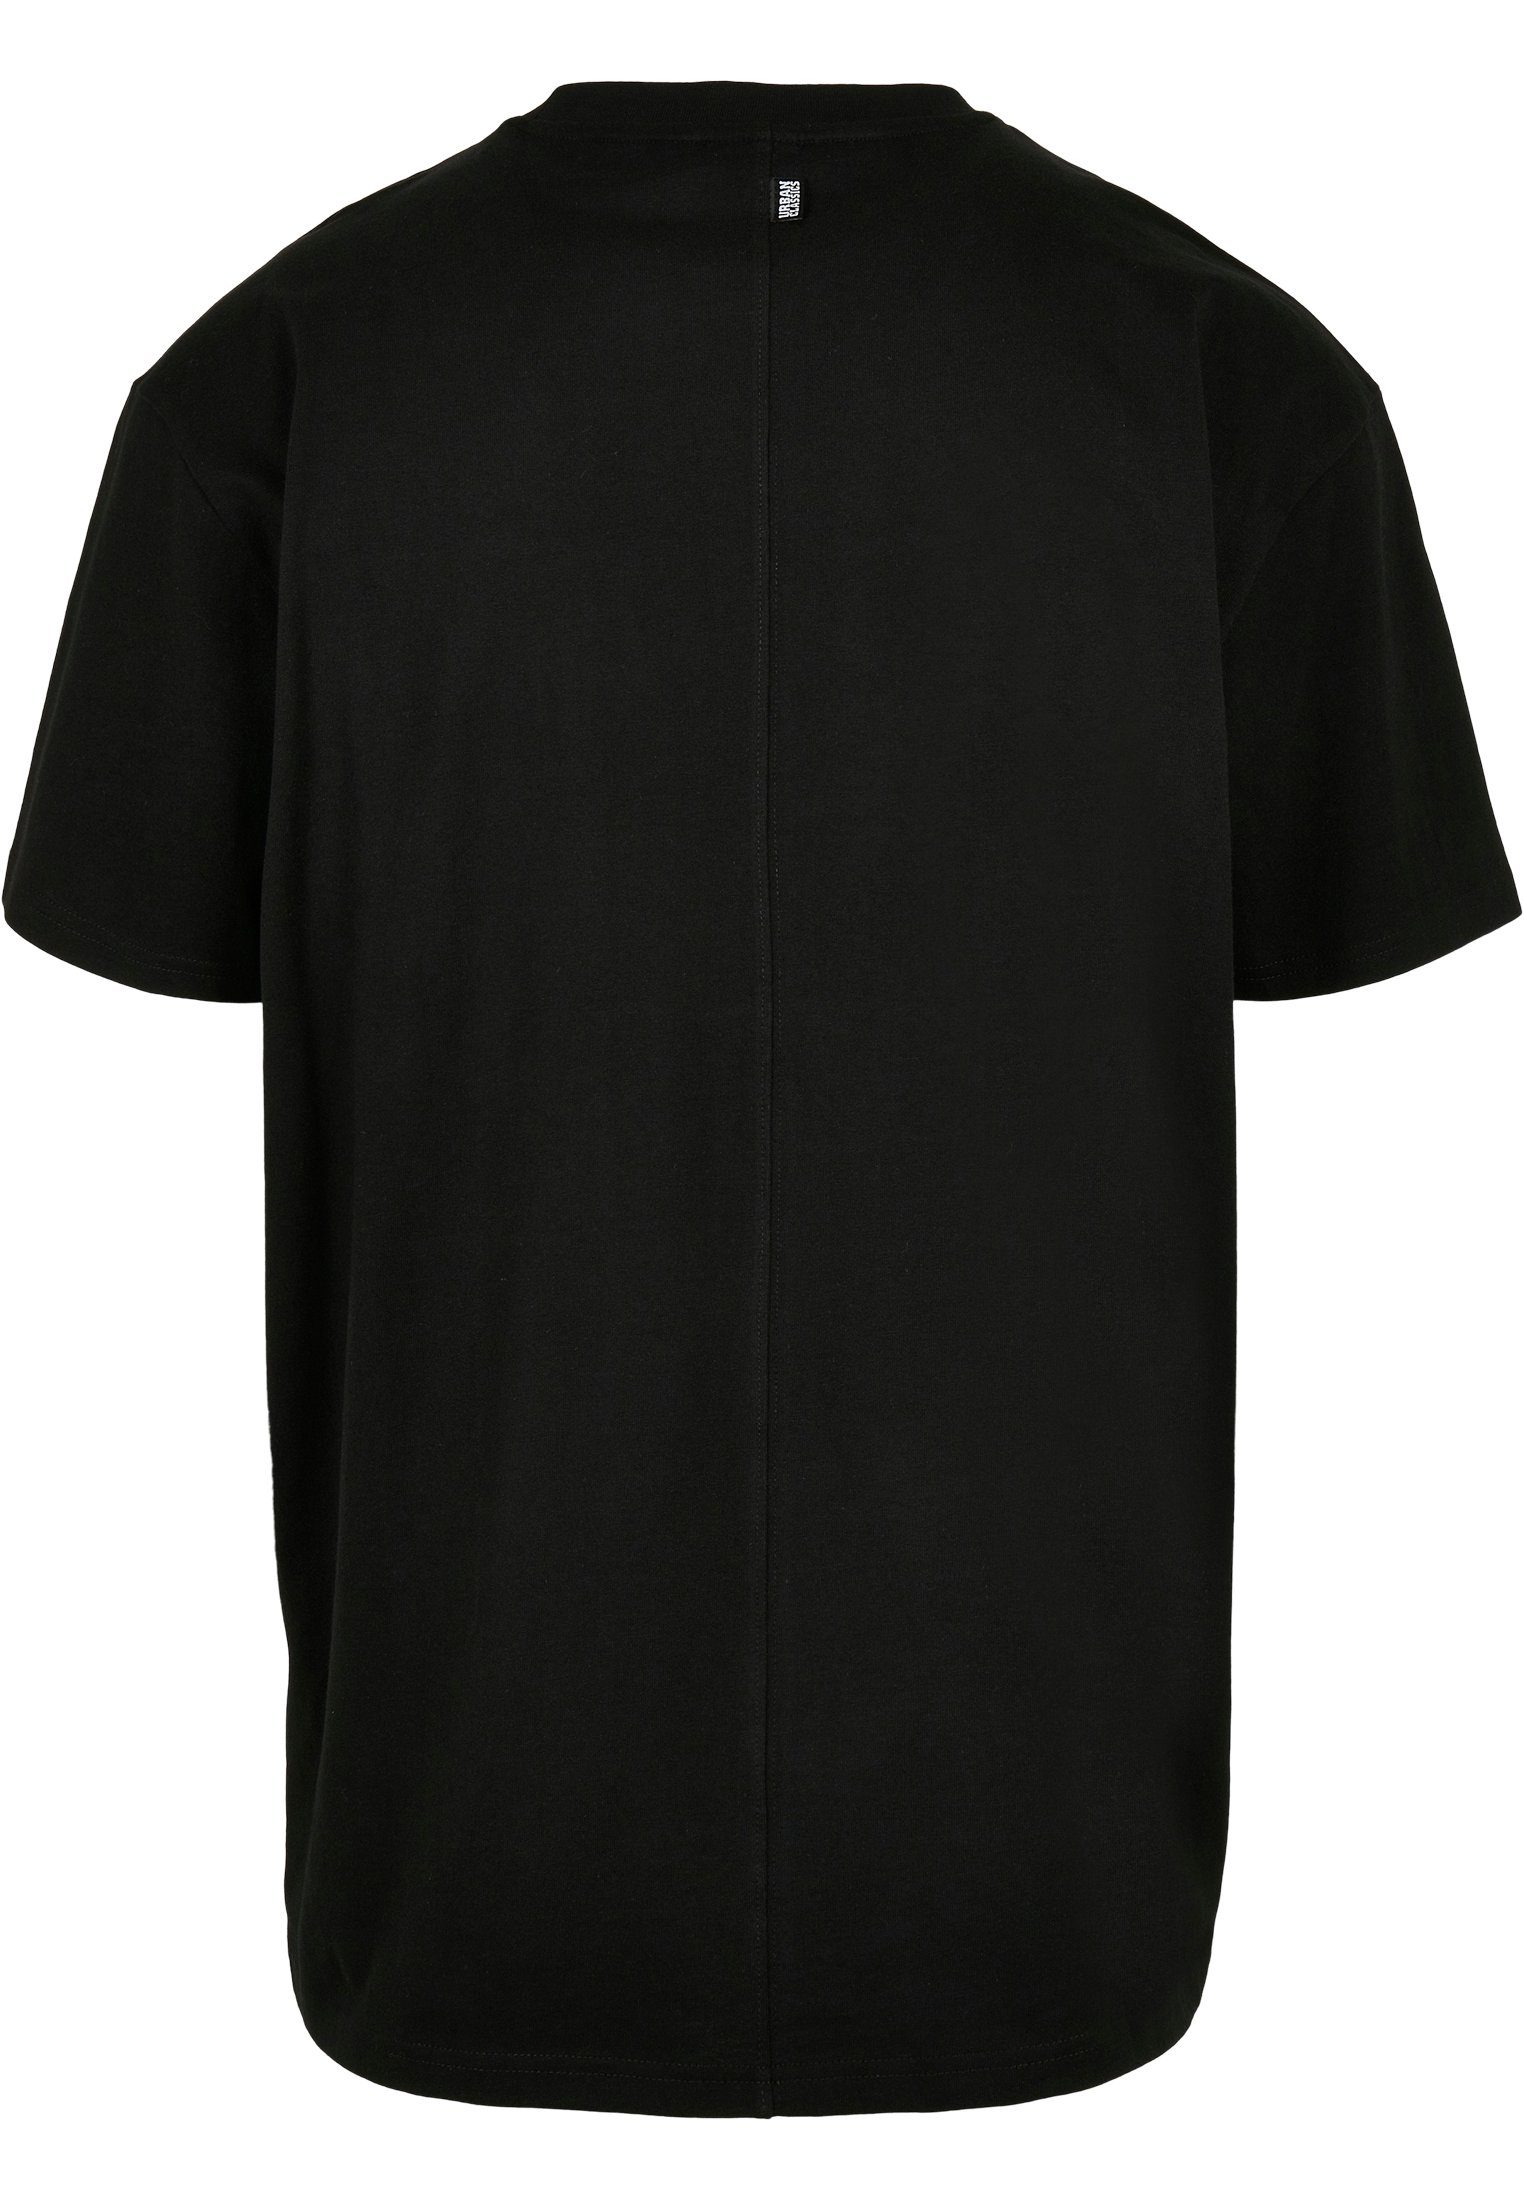 Oversized Black CLASSICS Tee URBAN Flap Big TB4128 Pocket Print-Shirt